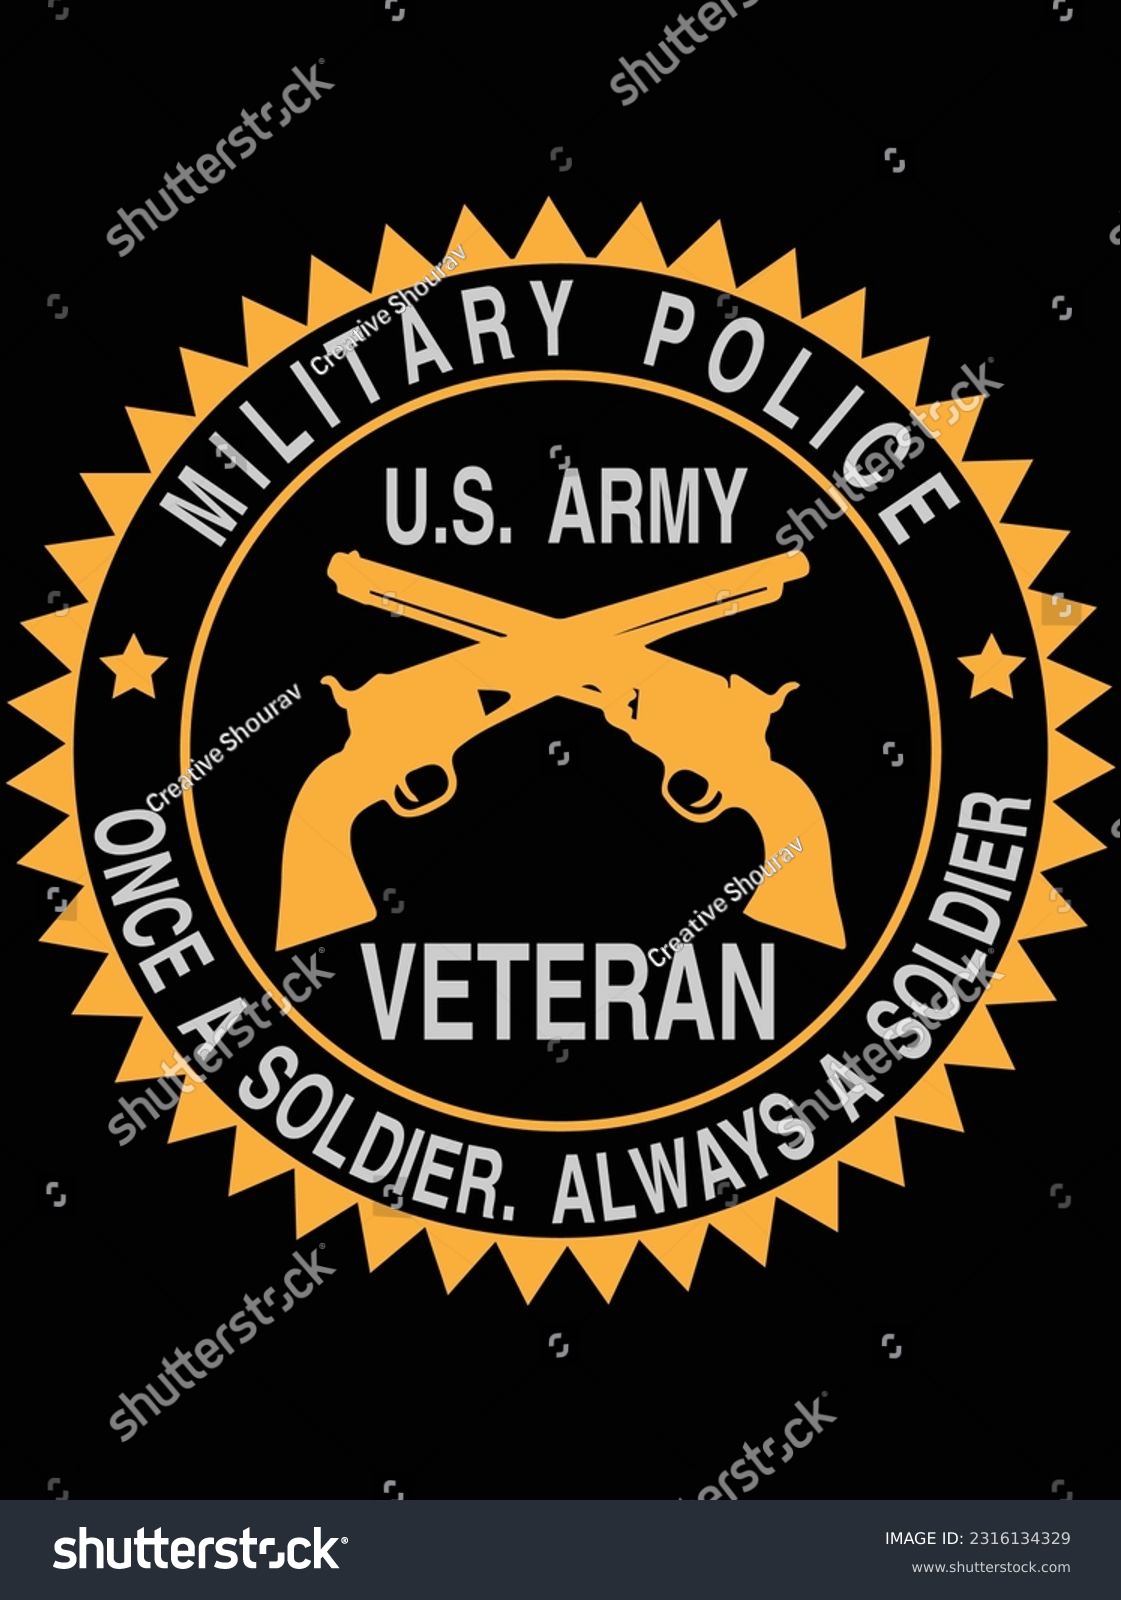 SVG of Military police once a soldier always a solder vector art design, eps file. design file for t-shirt. SVG, EPS cuttable design file svg